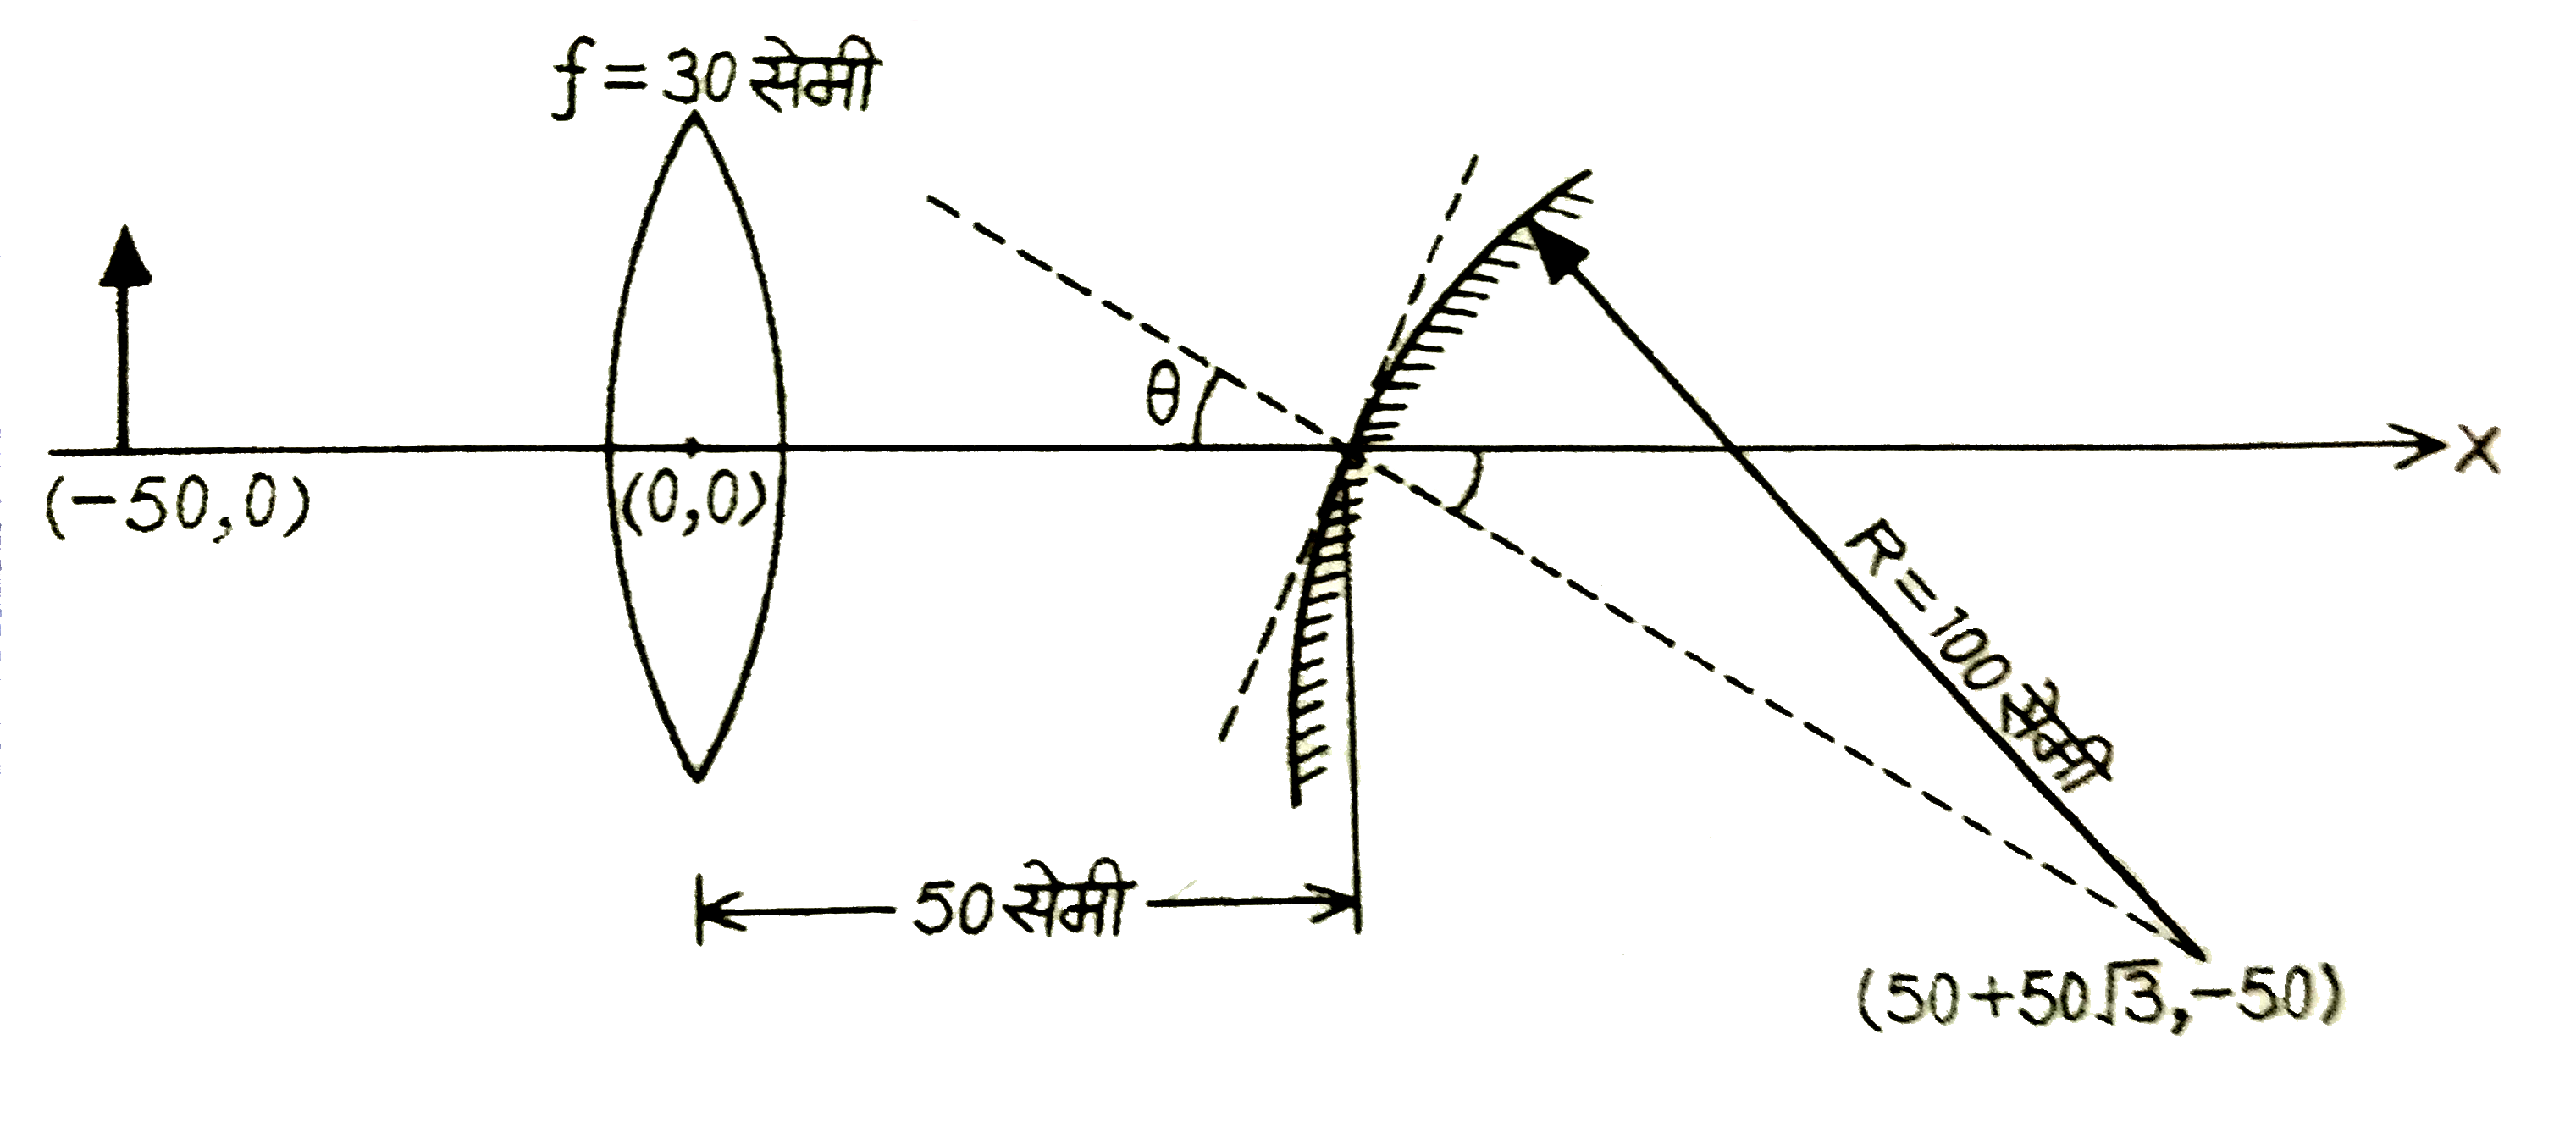 एक छोटी  वस्तु को 30 सेमी फोकस दुरी वाले एक पतले उत्तल लेन्स की बायीं ओर 50 सेमी की दूरी पर रखा गया है | 100 सेमी की वक्रता त्रिज्या वाले एक उत्तल गोलाकार  दर्पण  को लेन्स के दायीं  ओर 50 सेमी की दूरी पर रखा गया है | दर्पण को इस प्रकार से झुकाया गया है कि दर्पण की अक्ष लेन्स की अक्ष से theta = 30^(@)  का कोण बनती है, जैसा चित्र में दर्शाया गया है     यदि निर्देशांक  पद्धति का मूल बिंदु लेन्स के मध्य में हो, तो जहाँ प्रतिबिम्ब  बना है उस बिंदु का निर्देशांक (x,y) सेमी में है :